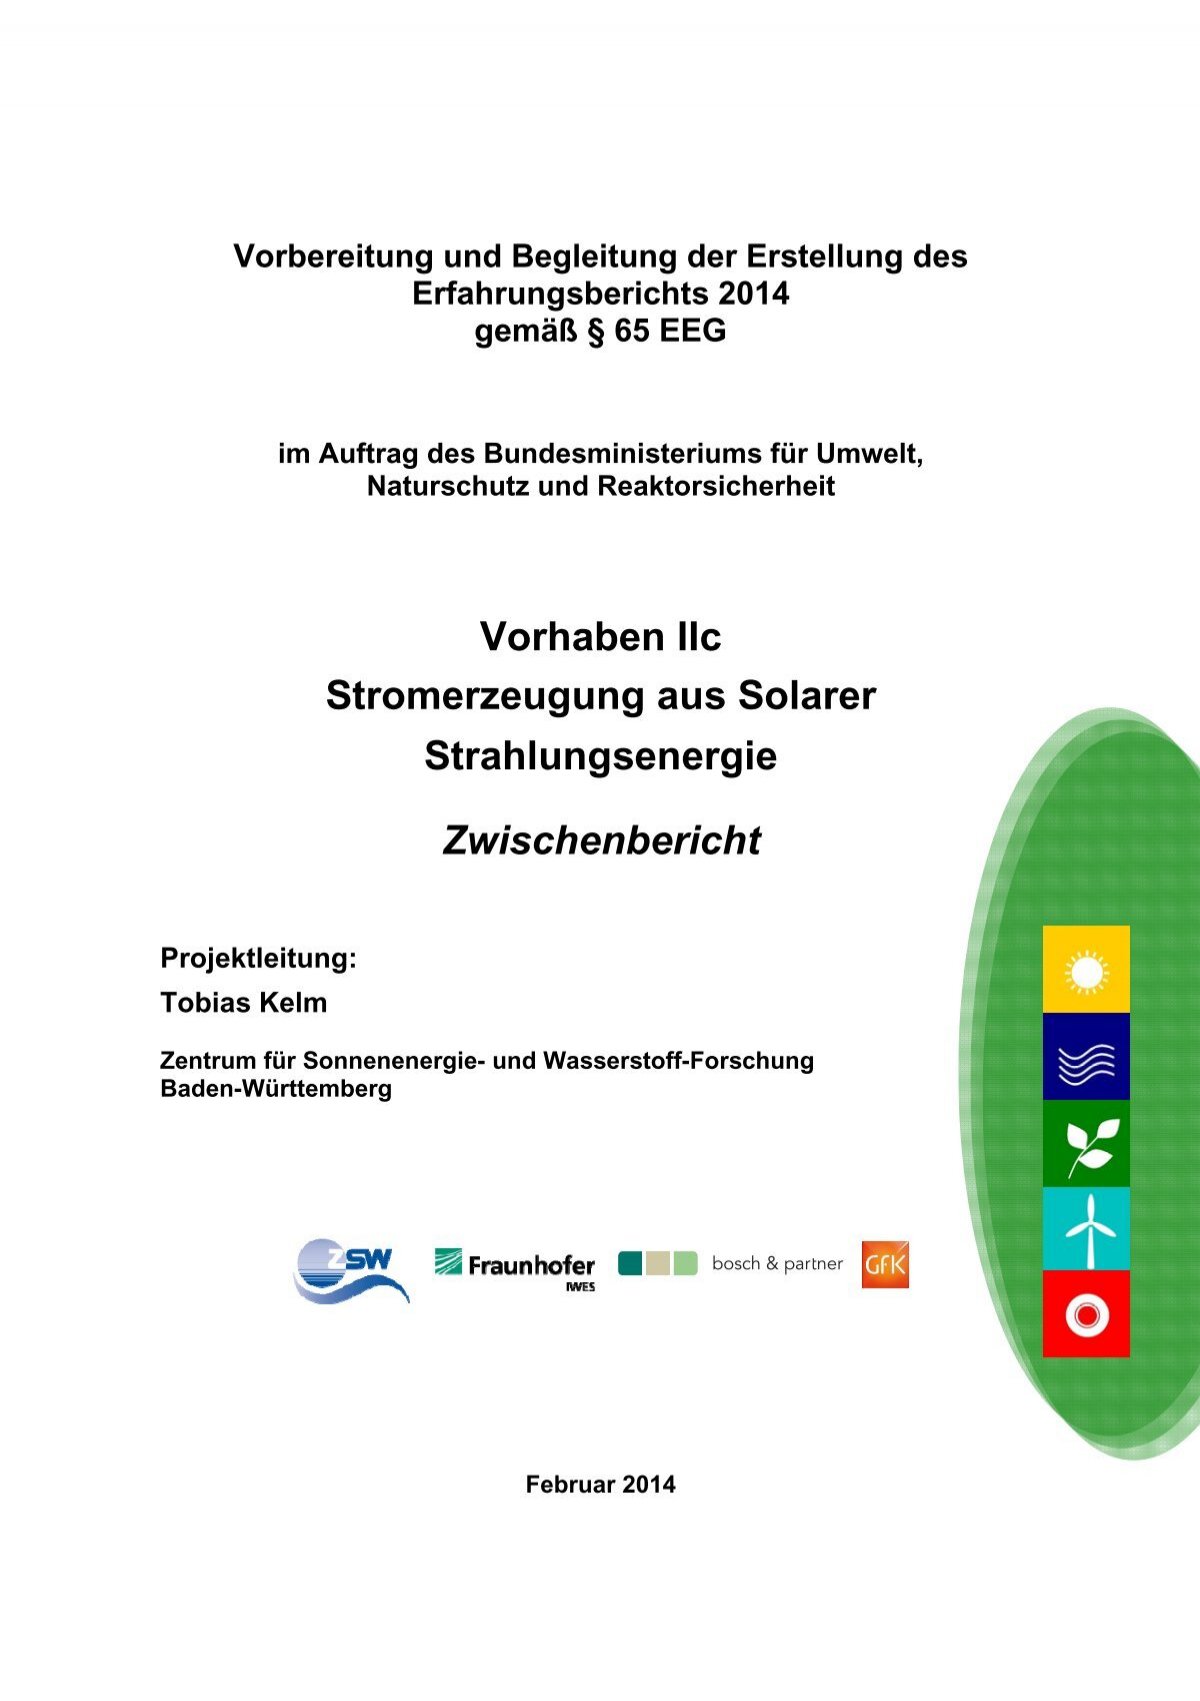 Fast jeder dritte Hausbesitzer plant eigene Solarstrom-Anlage - Sonnenseite  - Ökologische Kommunikation mit Franz Alt